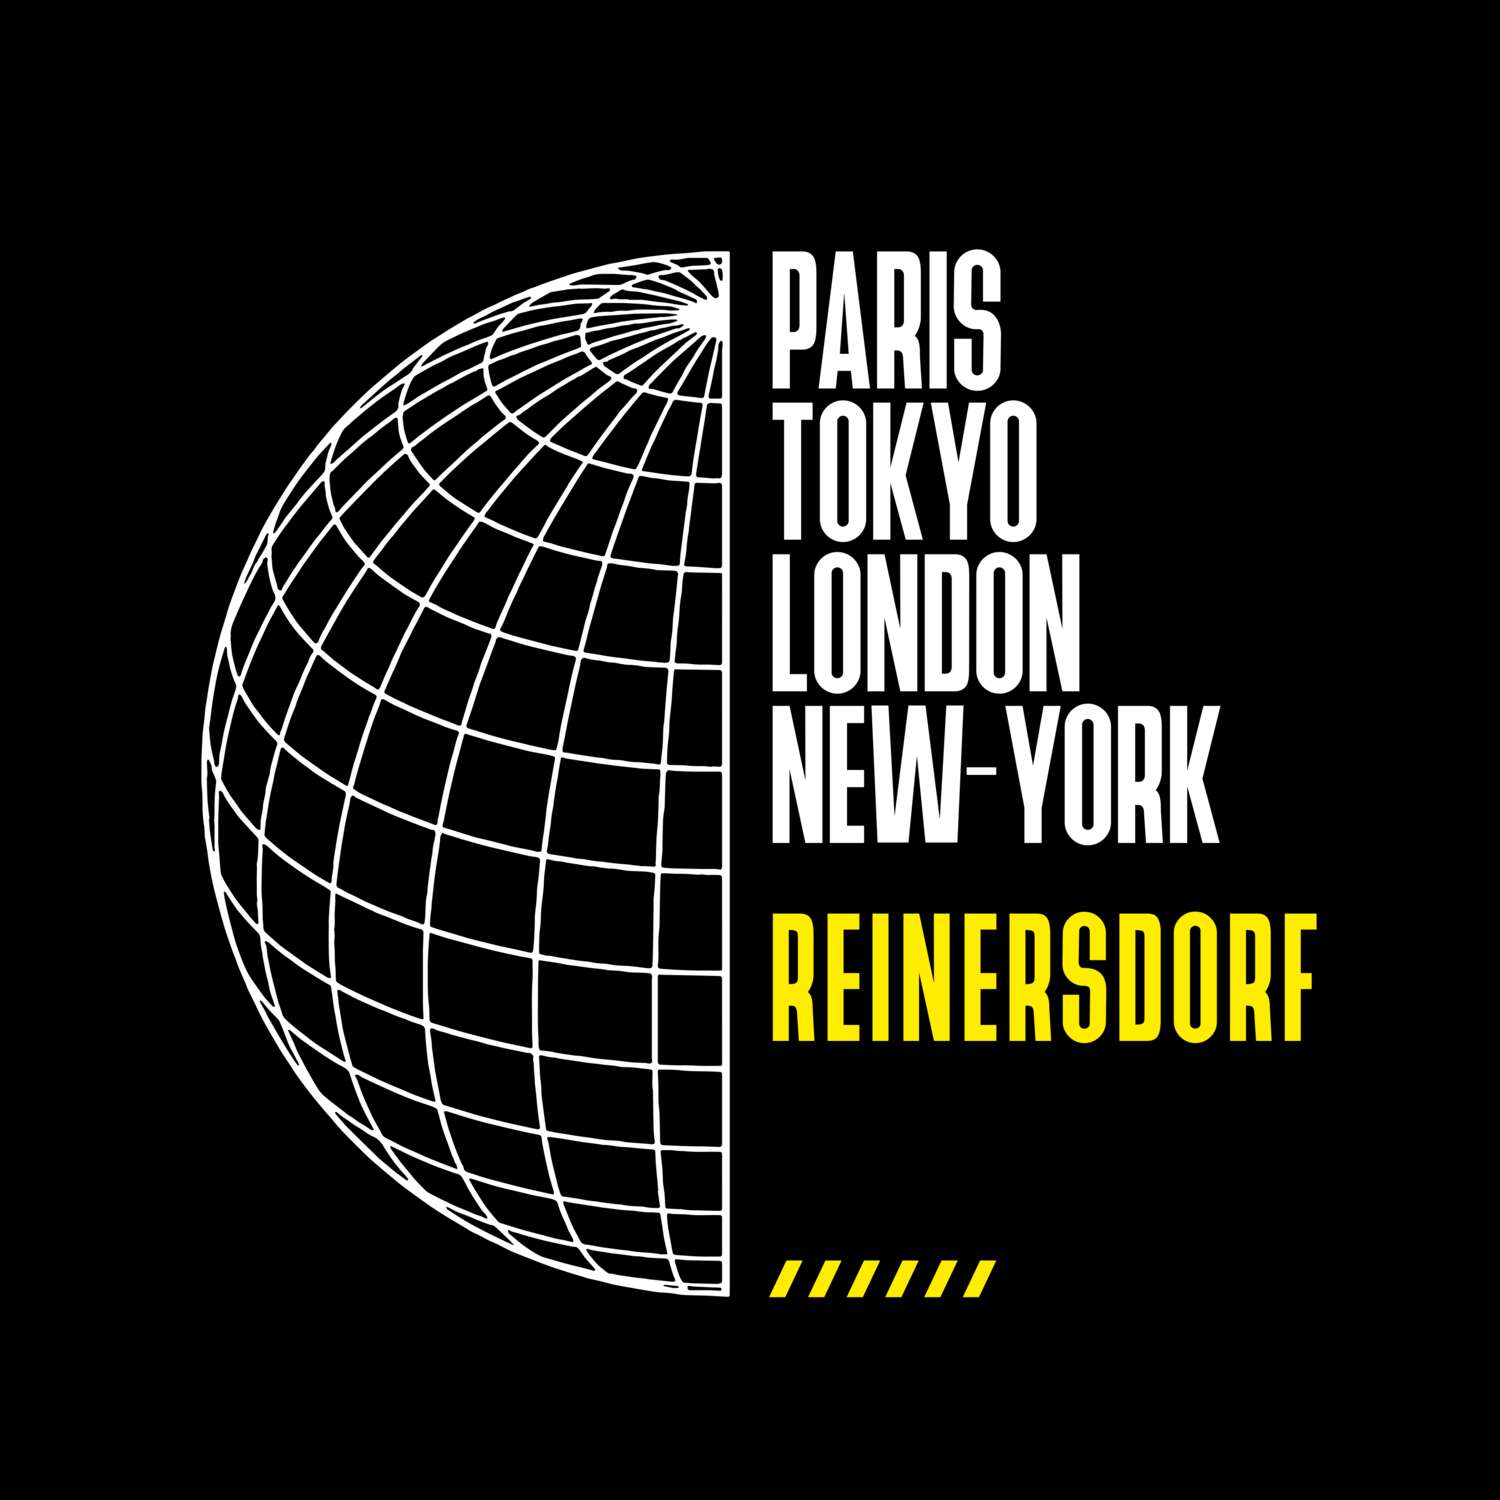 Reinersdorf T-Shirt »Paris Tokyo London«